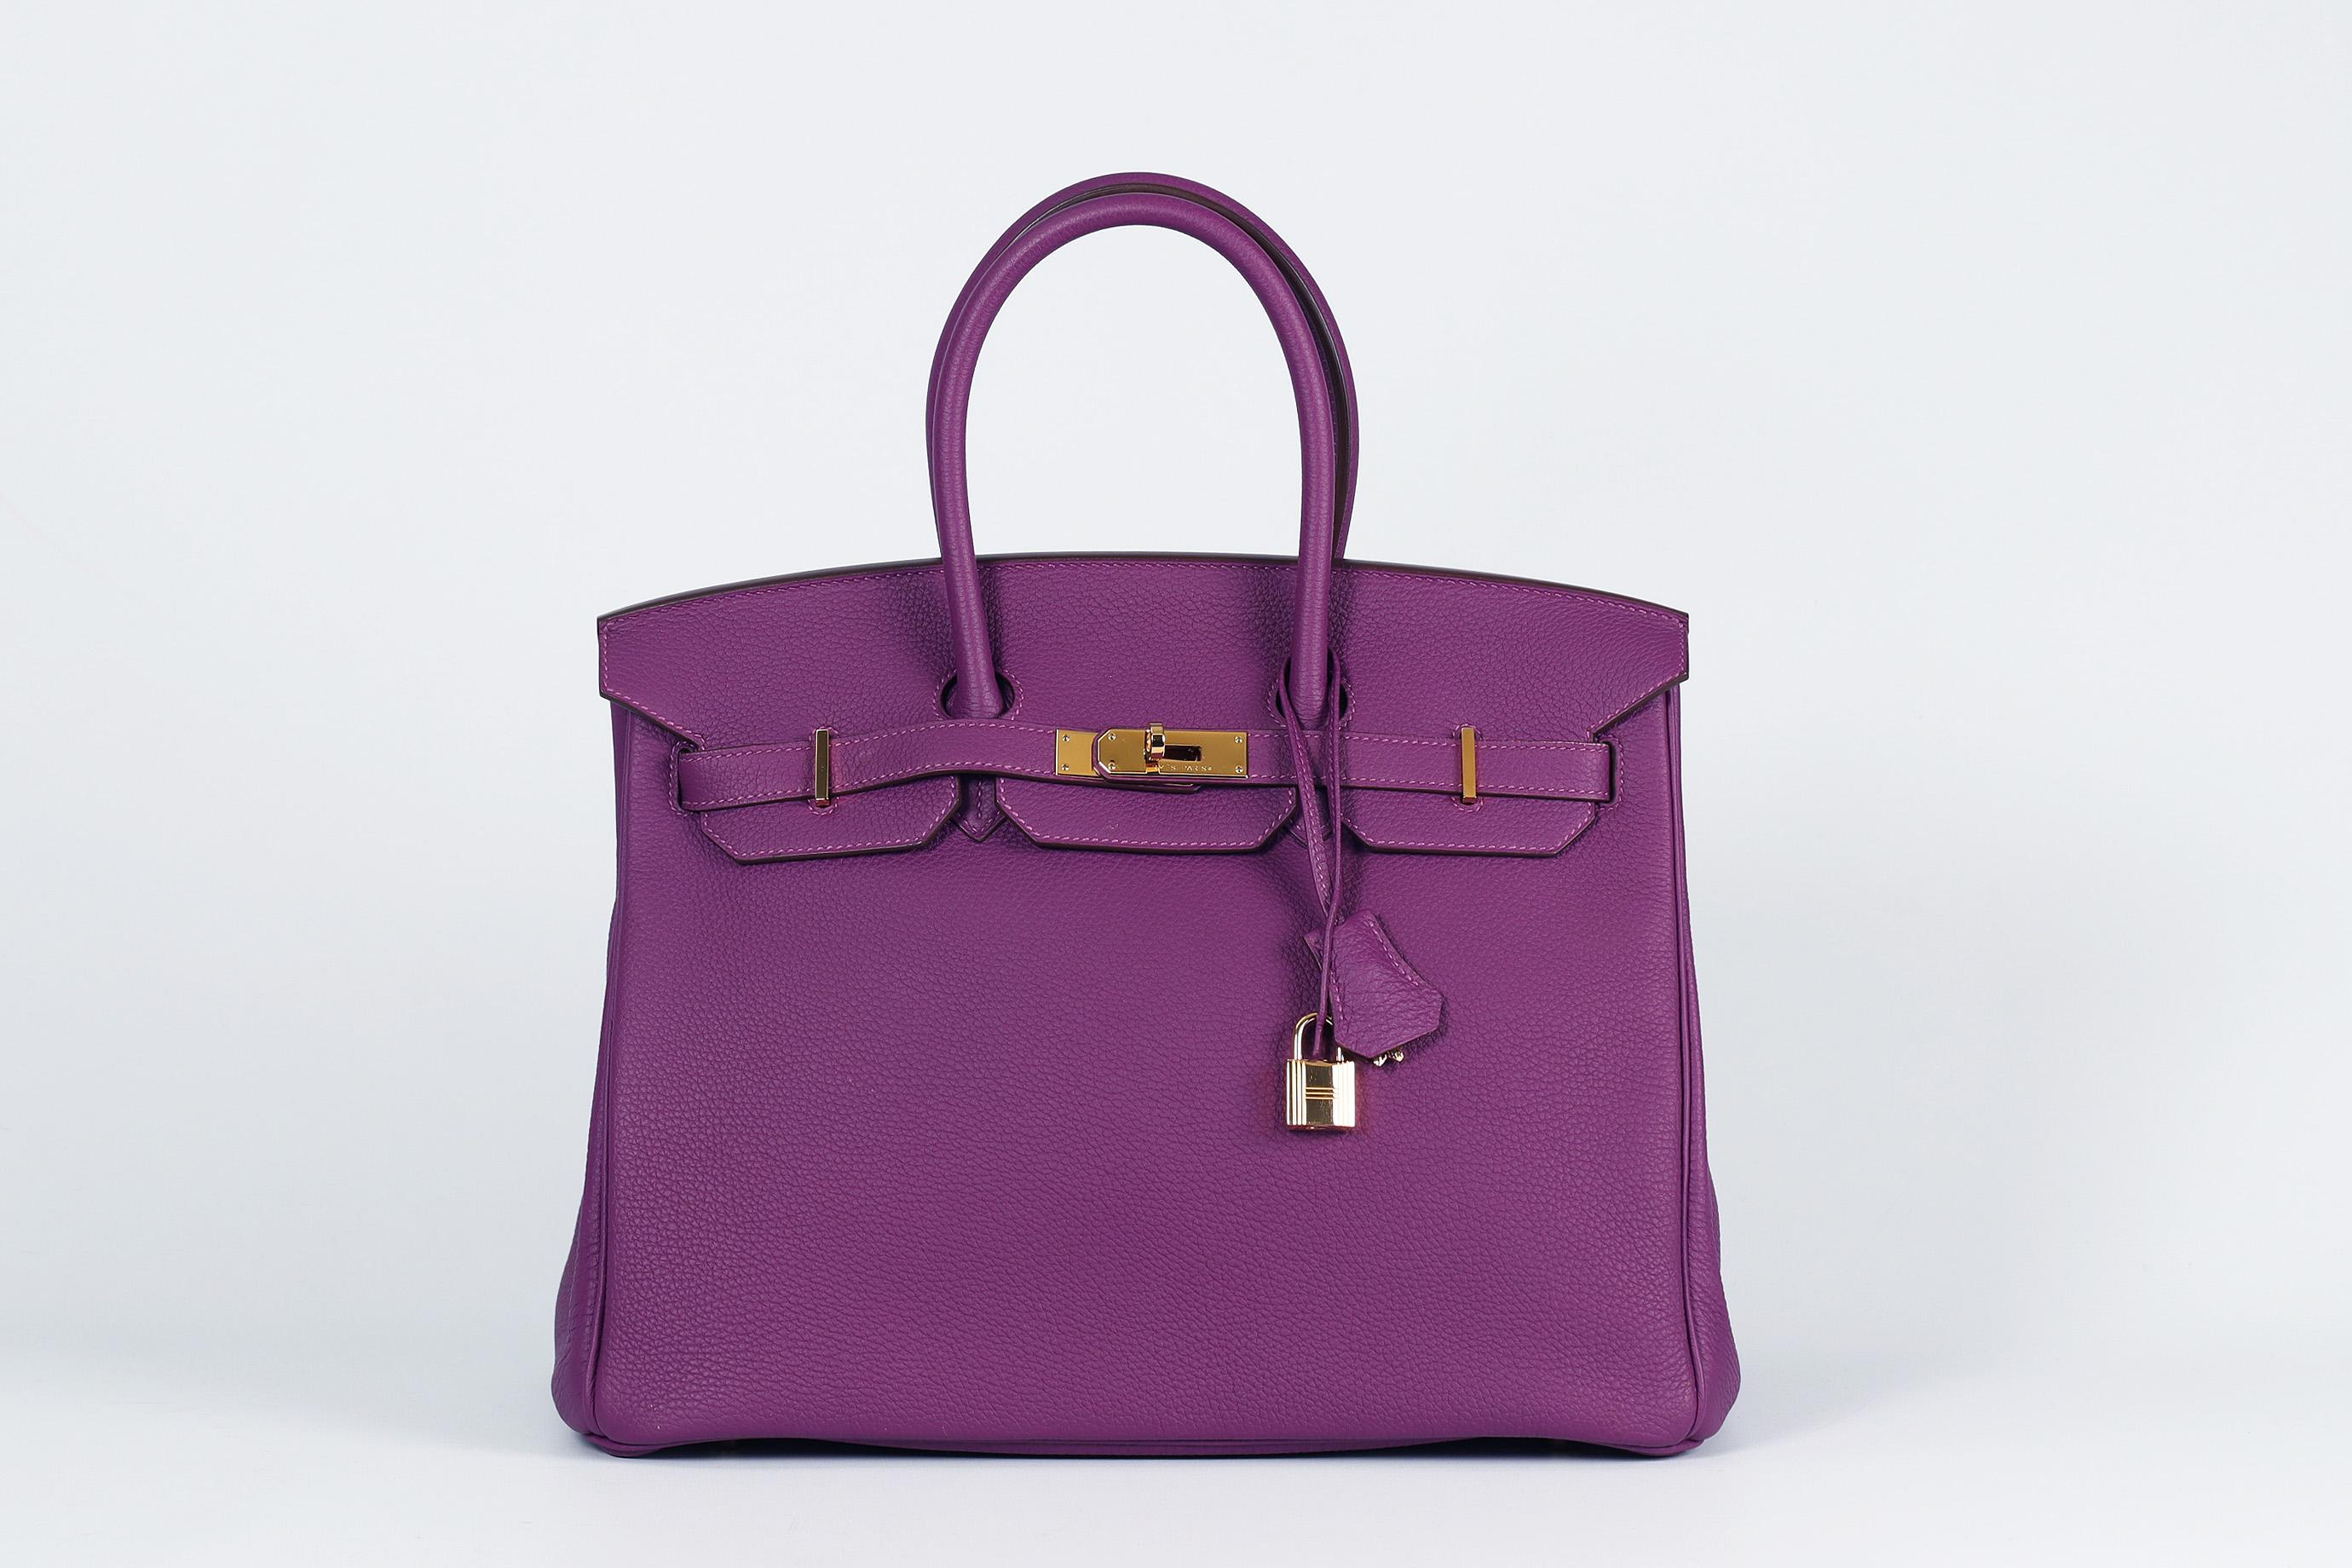 <ul>
<li>Hermès 2014 Birkin 35Cm Togo Leder Tasche.</li>
<li>Lila.</li>
<li>Diese wunderschöne 2014 Hermès 